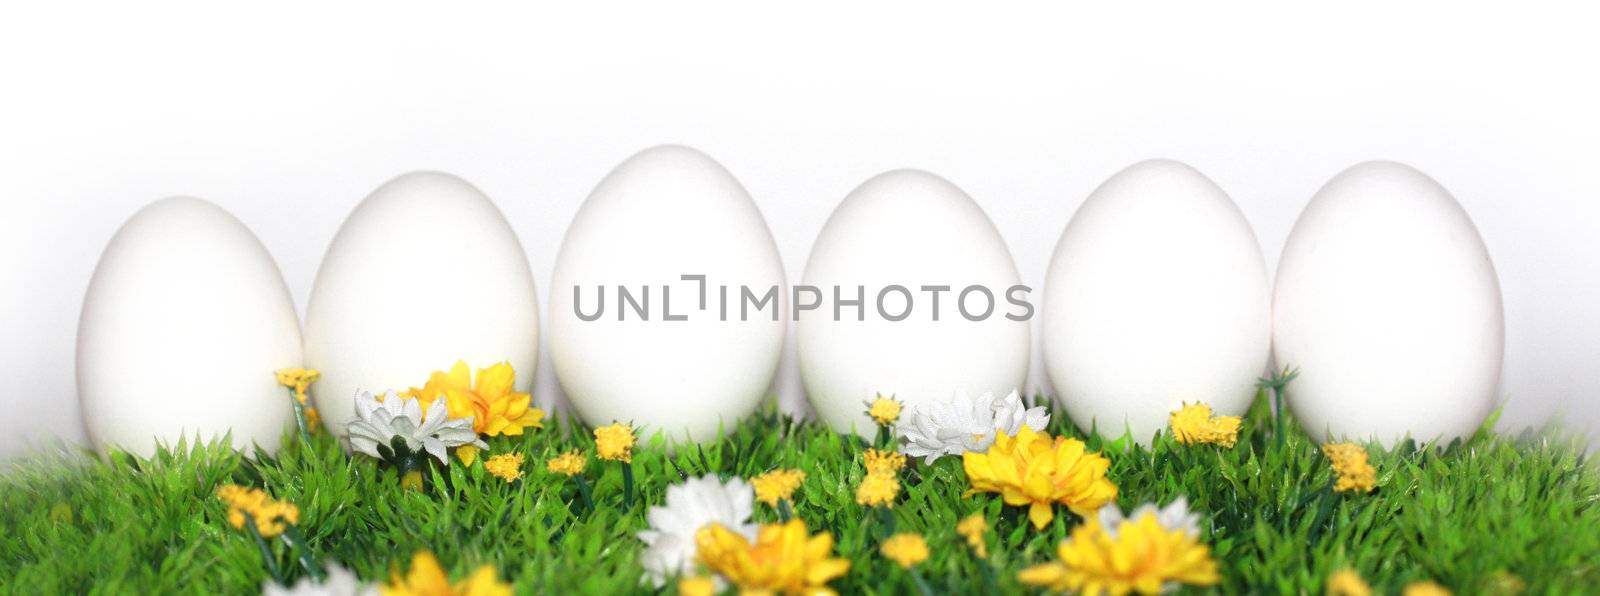 6 white eggs by photochecker